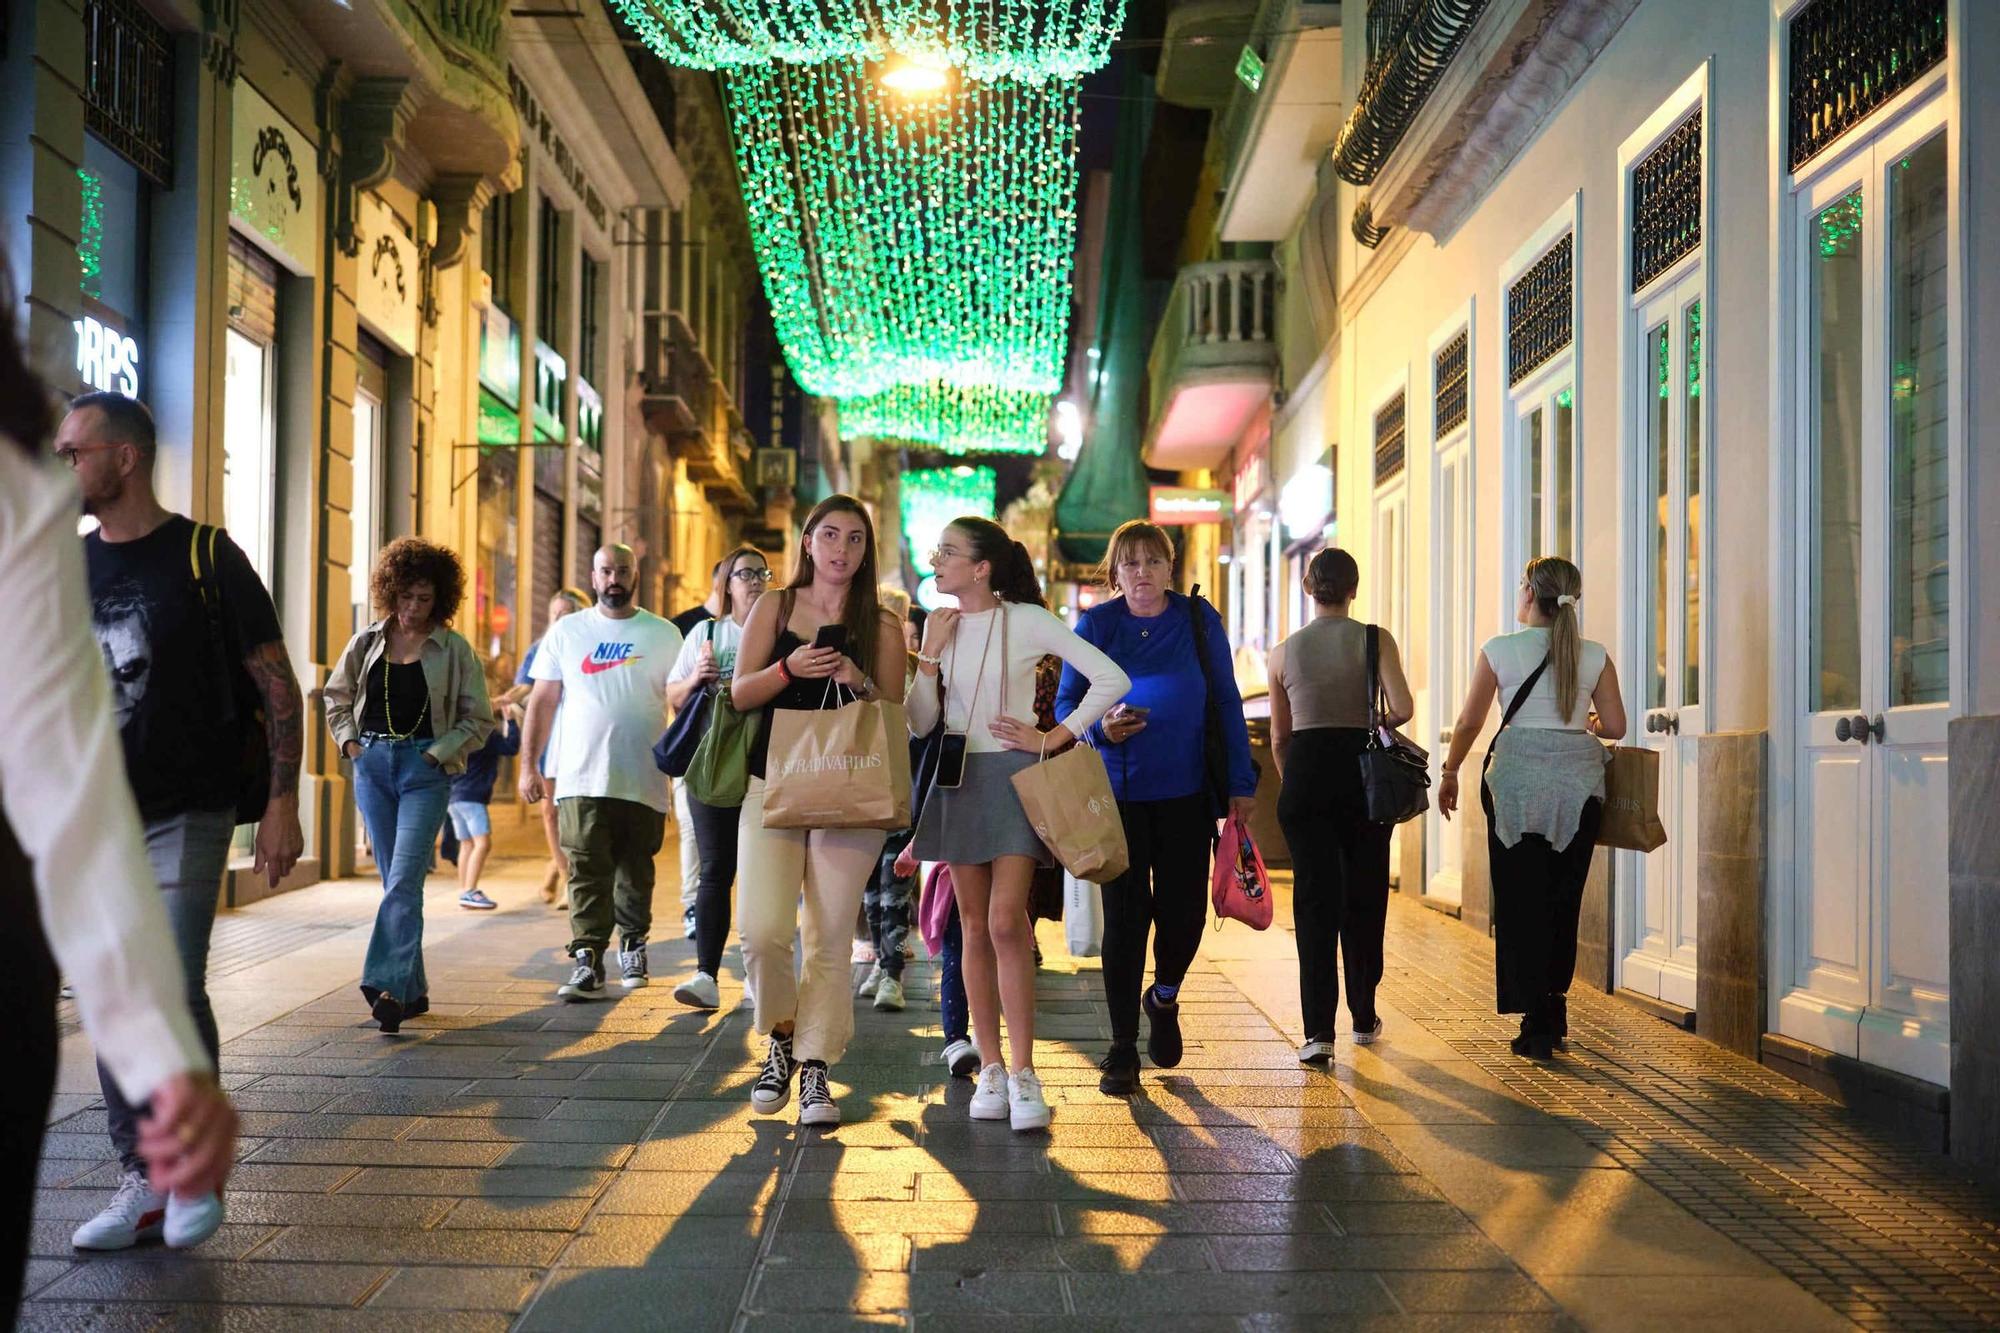 Los clientes aprovechan los descuentos del ‘Black Friday’ en los comercios de Tenerife